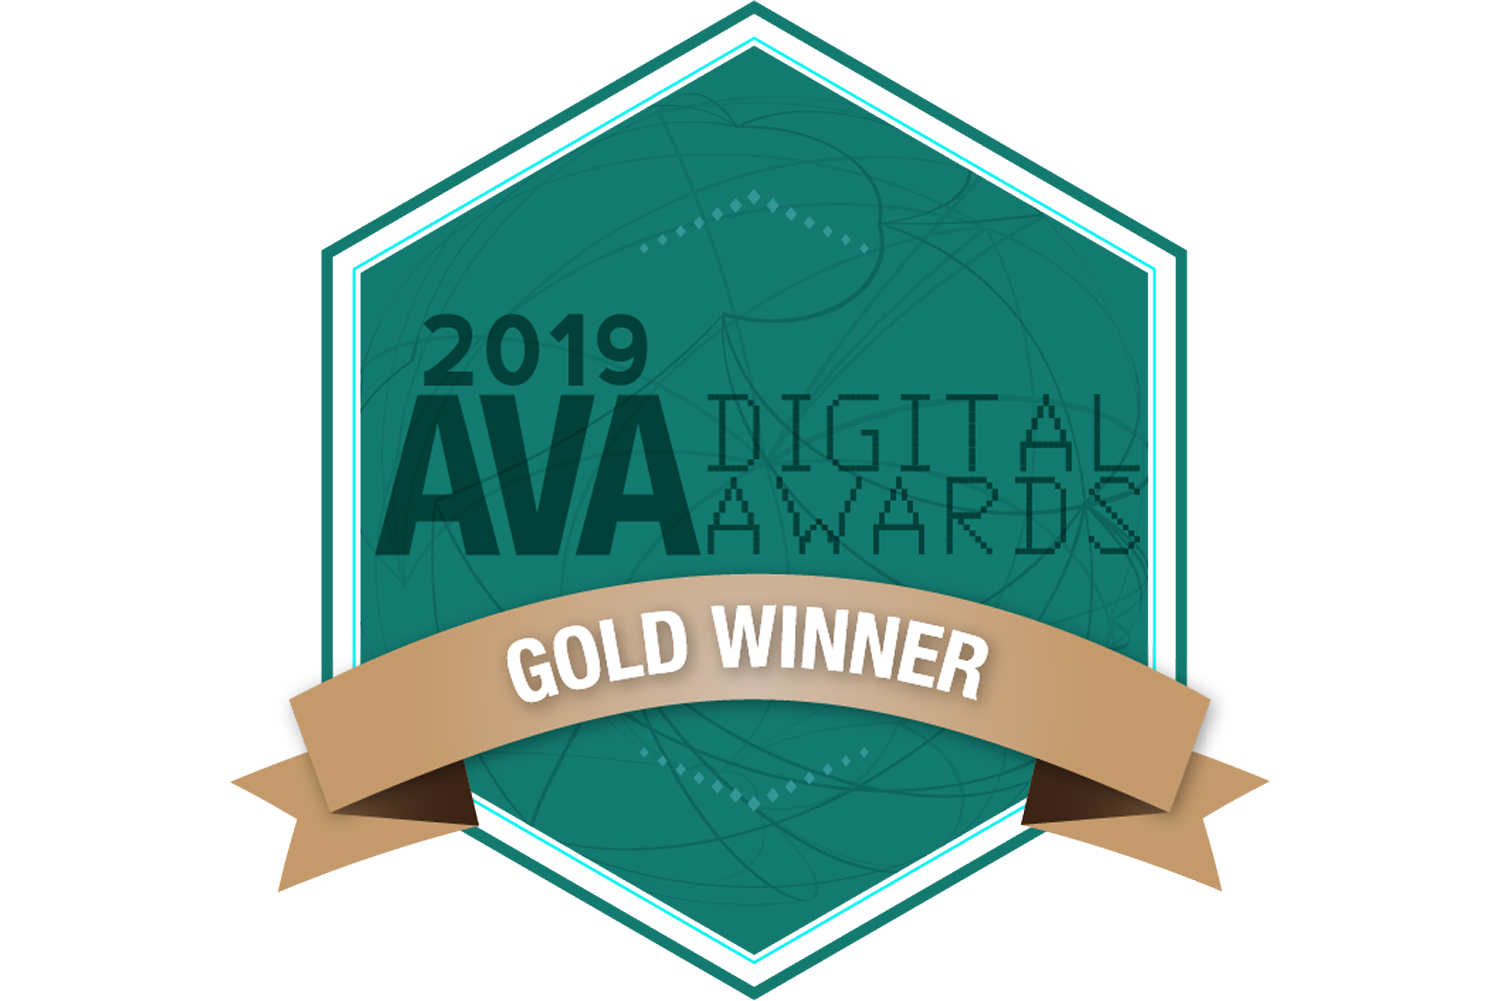 AVA Digital Awards 2019 Gold